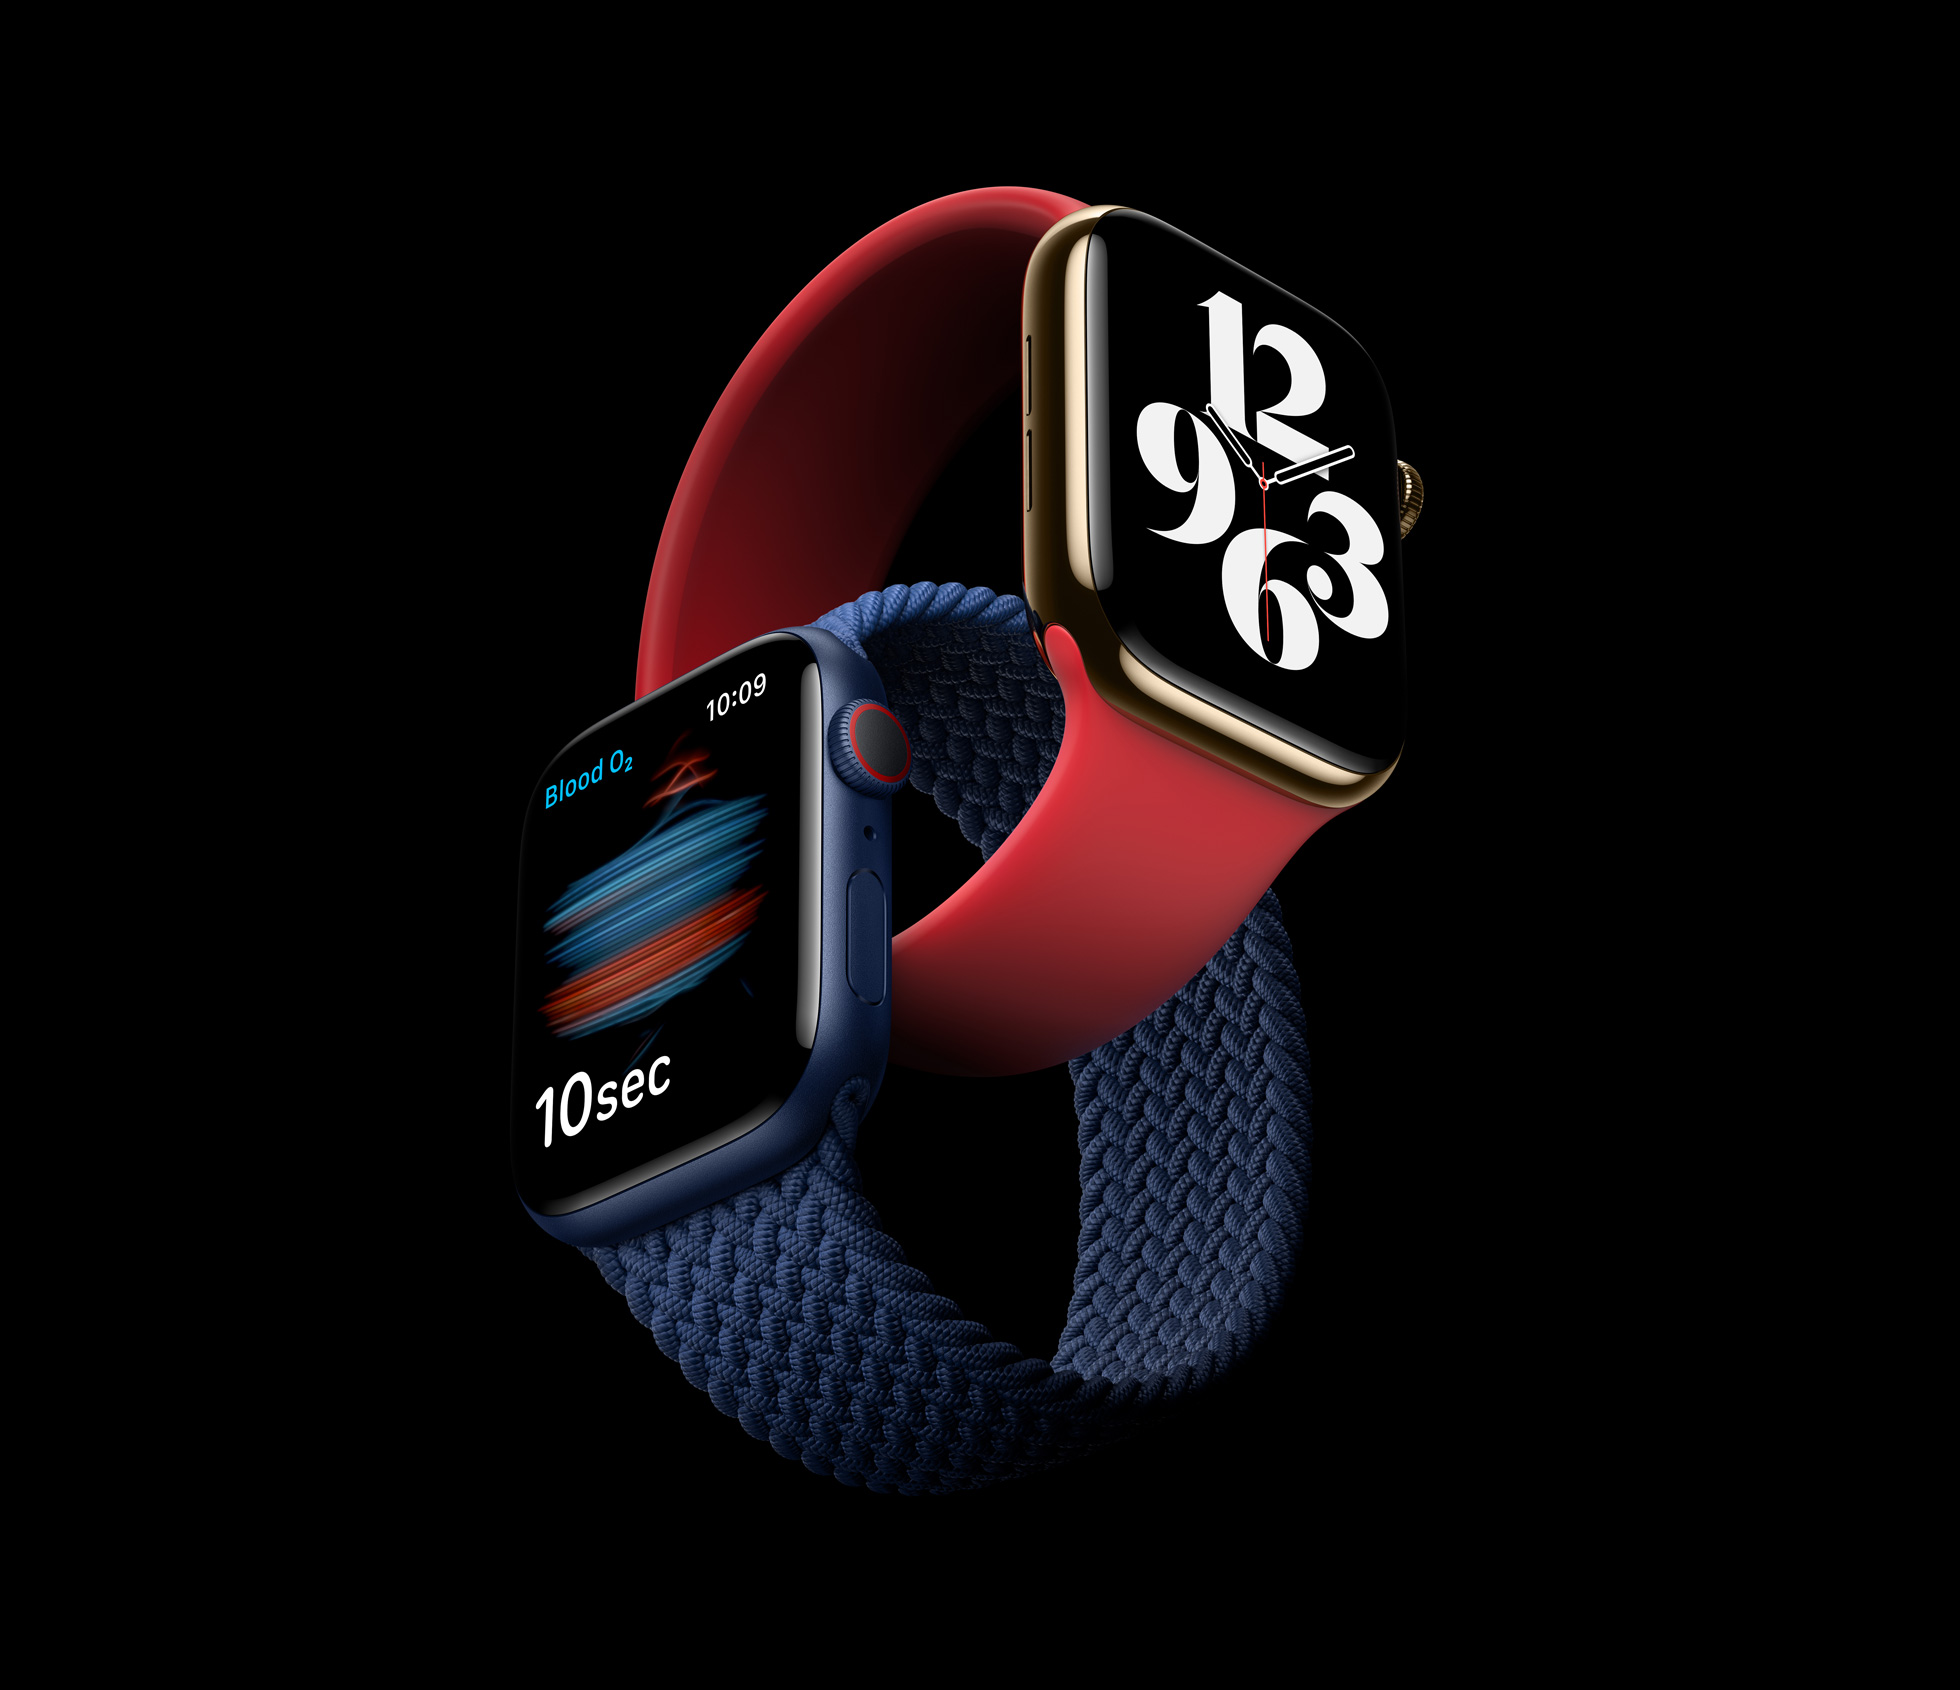 Apple_delivers-apple-watch-series-6_09152020_big.jpg.large_2x.jpg